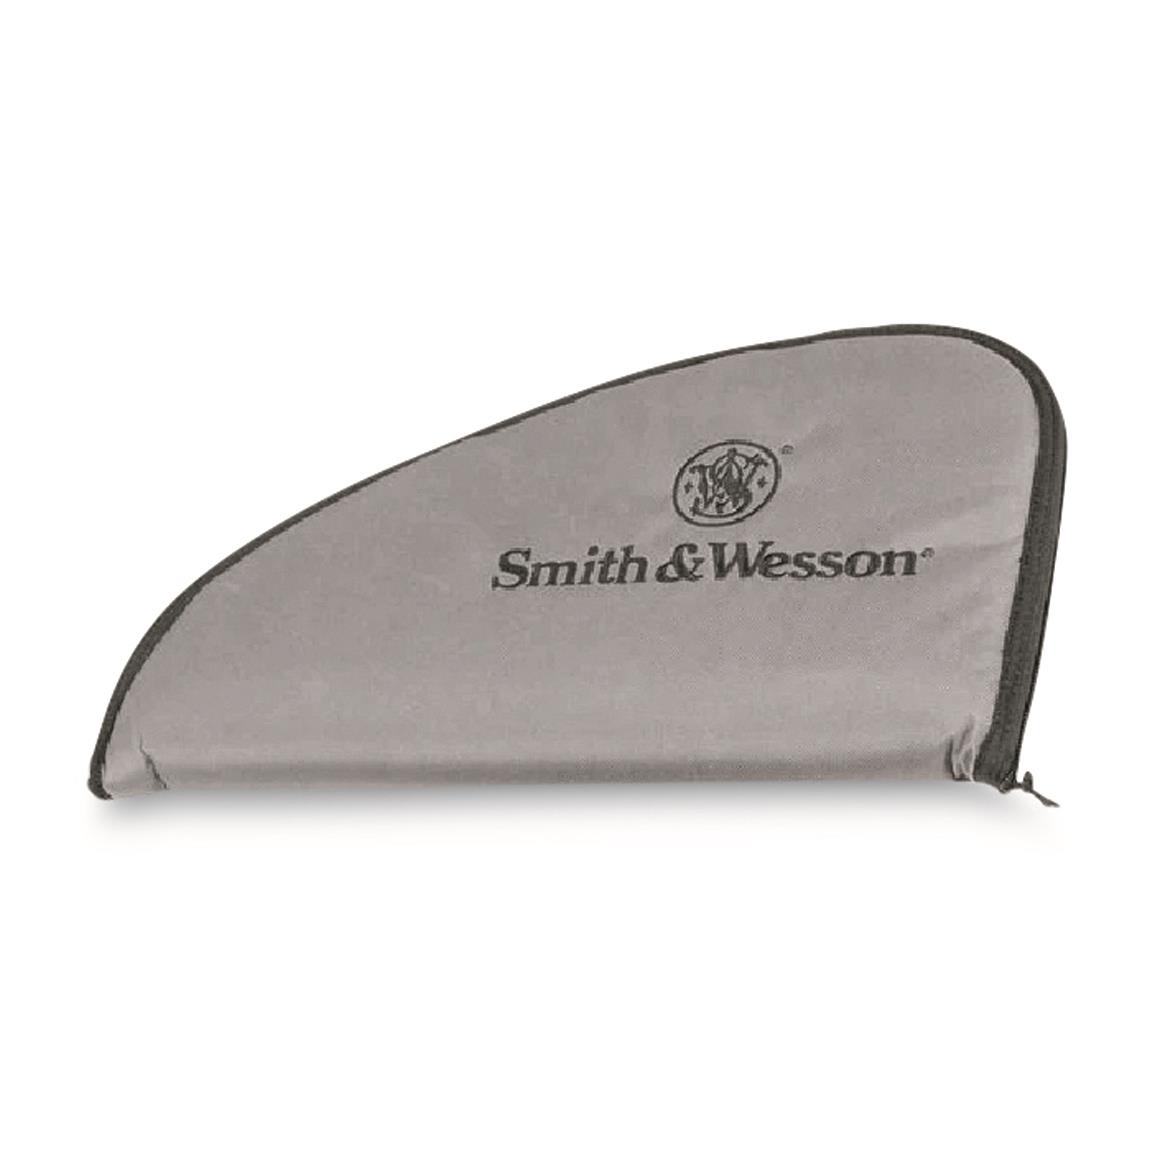 Smith & Wesson Defender Large Handgun Case